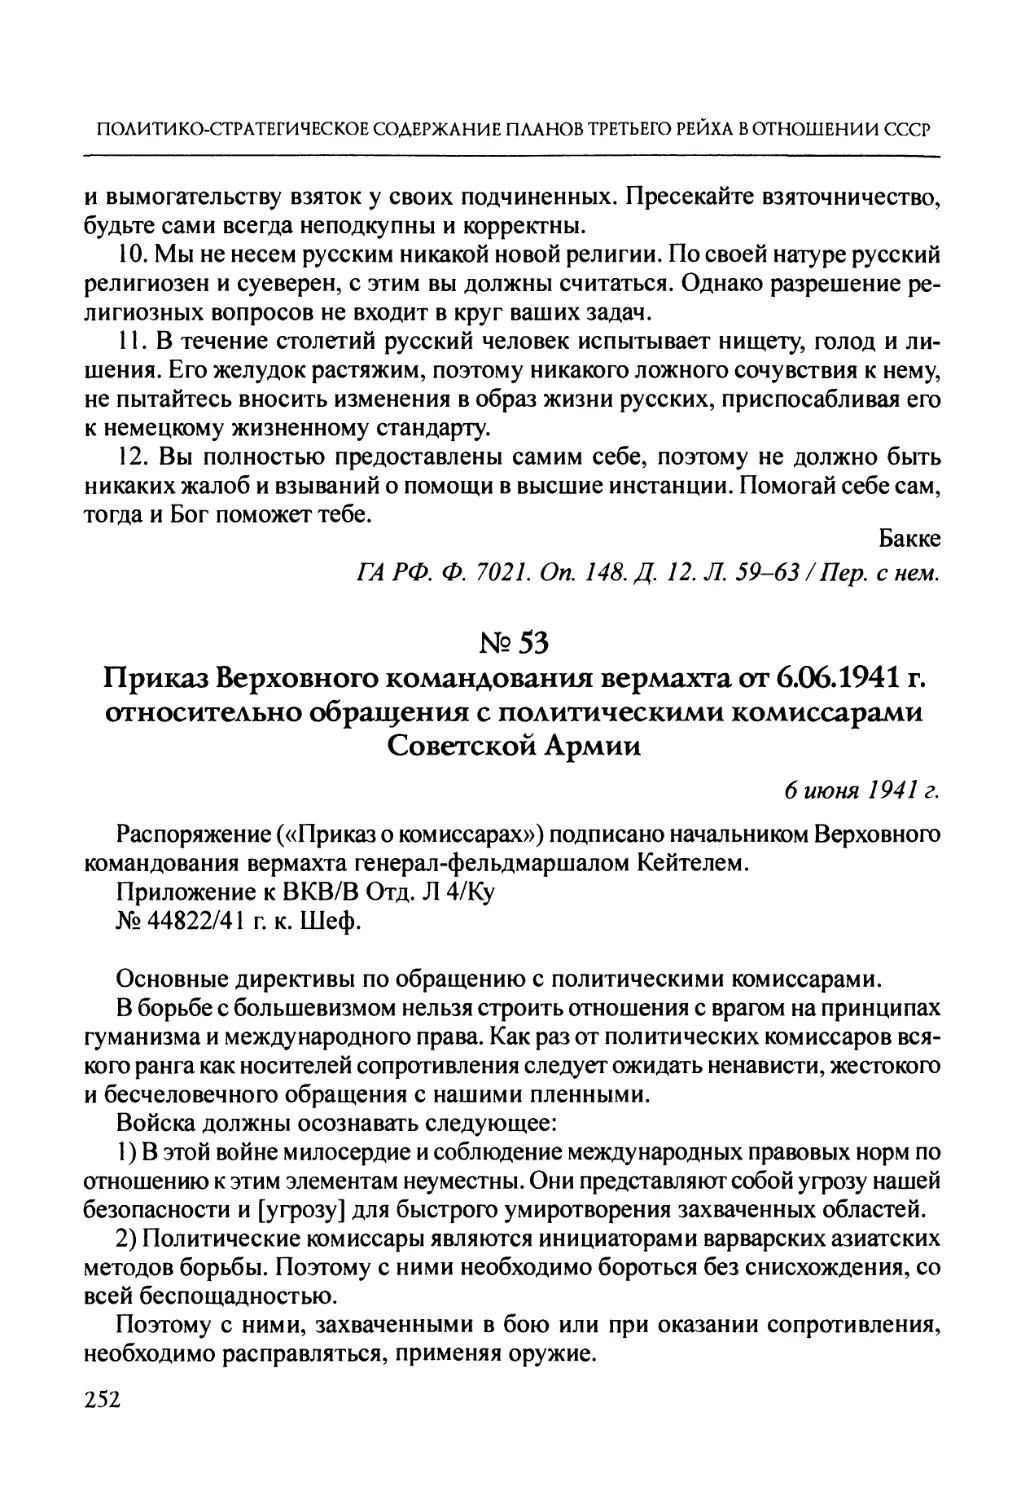 №53. Приказ Верховного командования вермахта от 6.06.1941 г. относительно обращения с политическими комиссарами Советской Армии